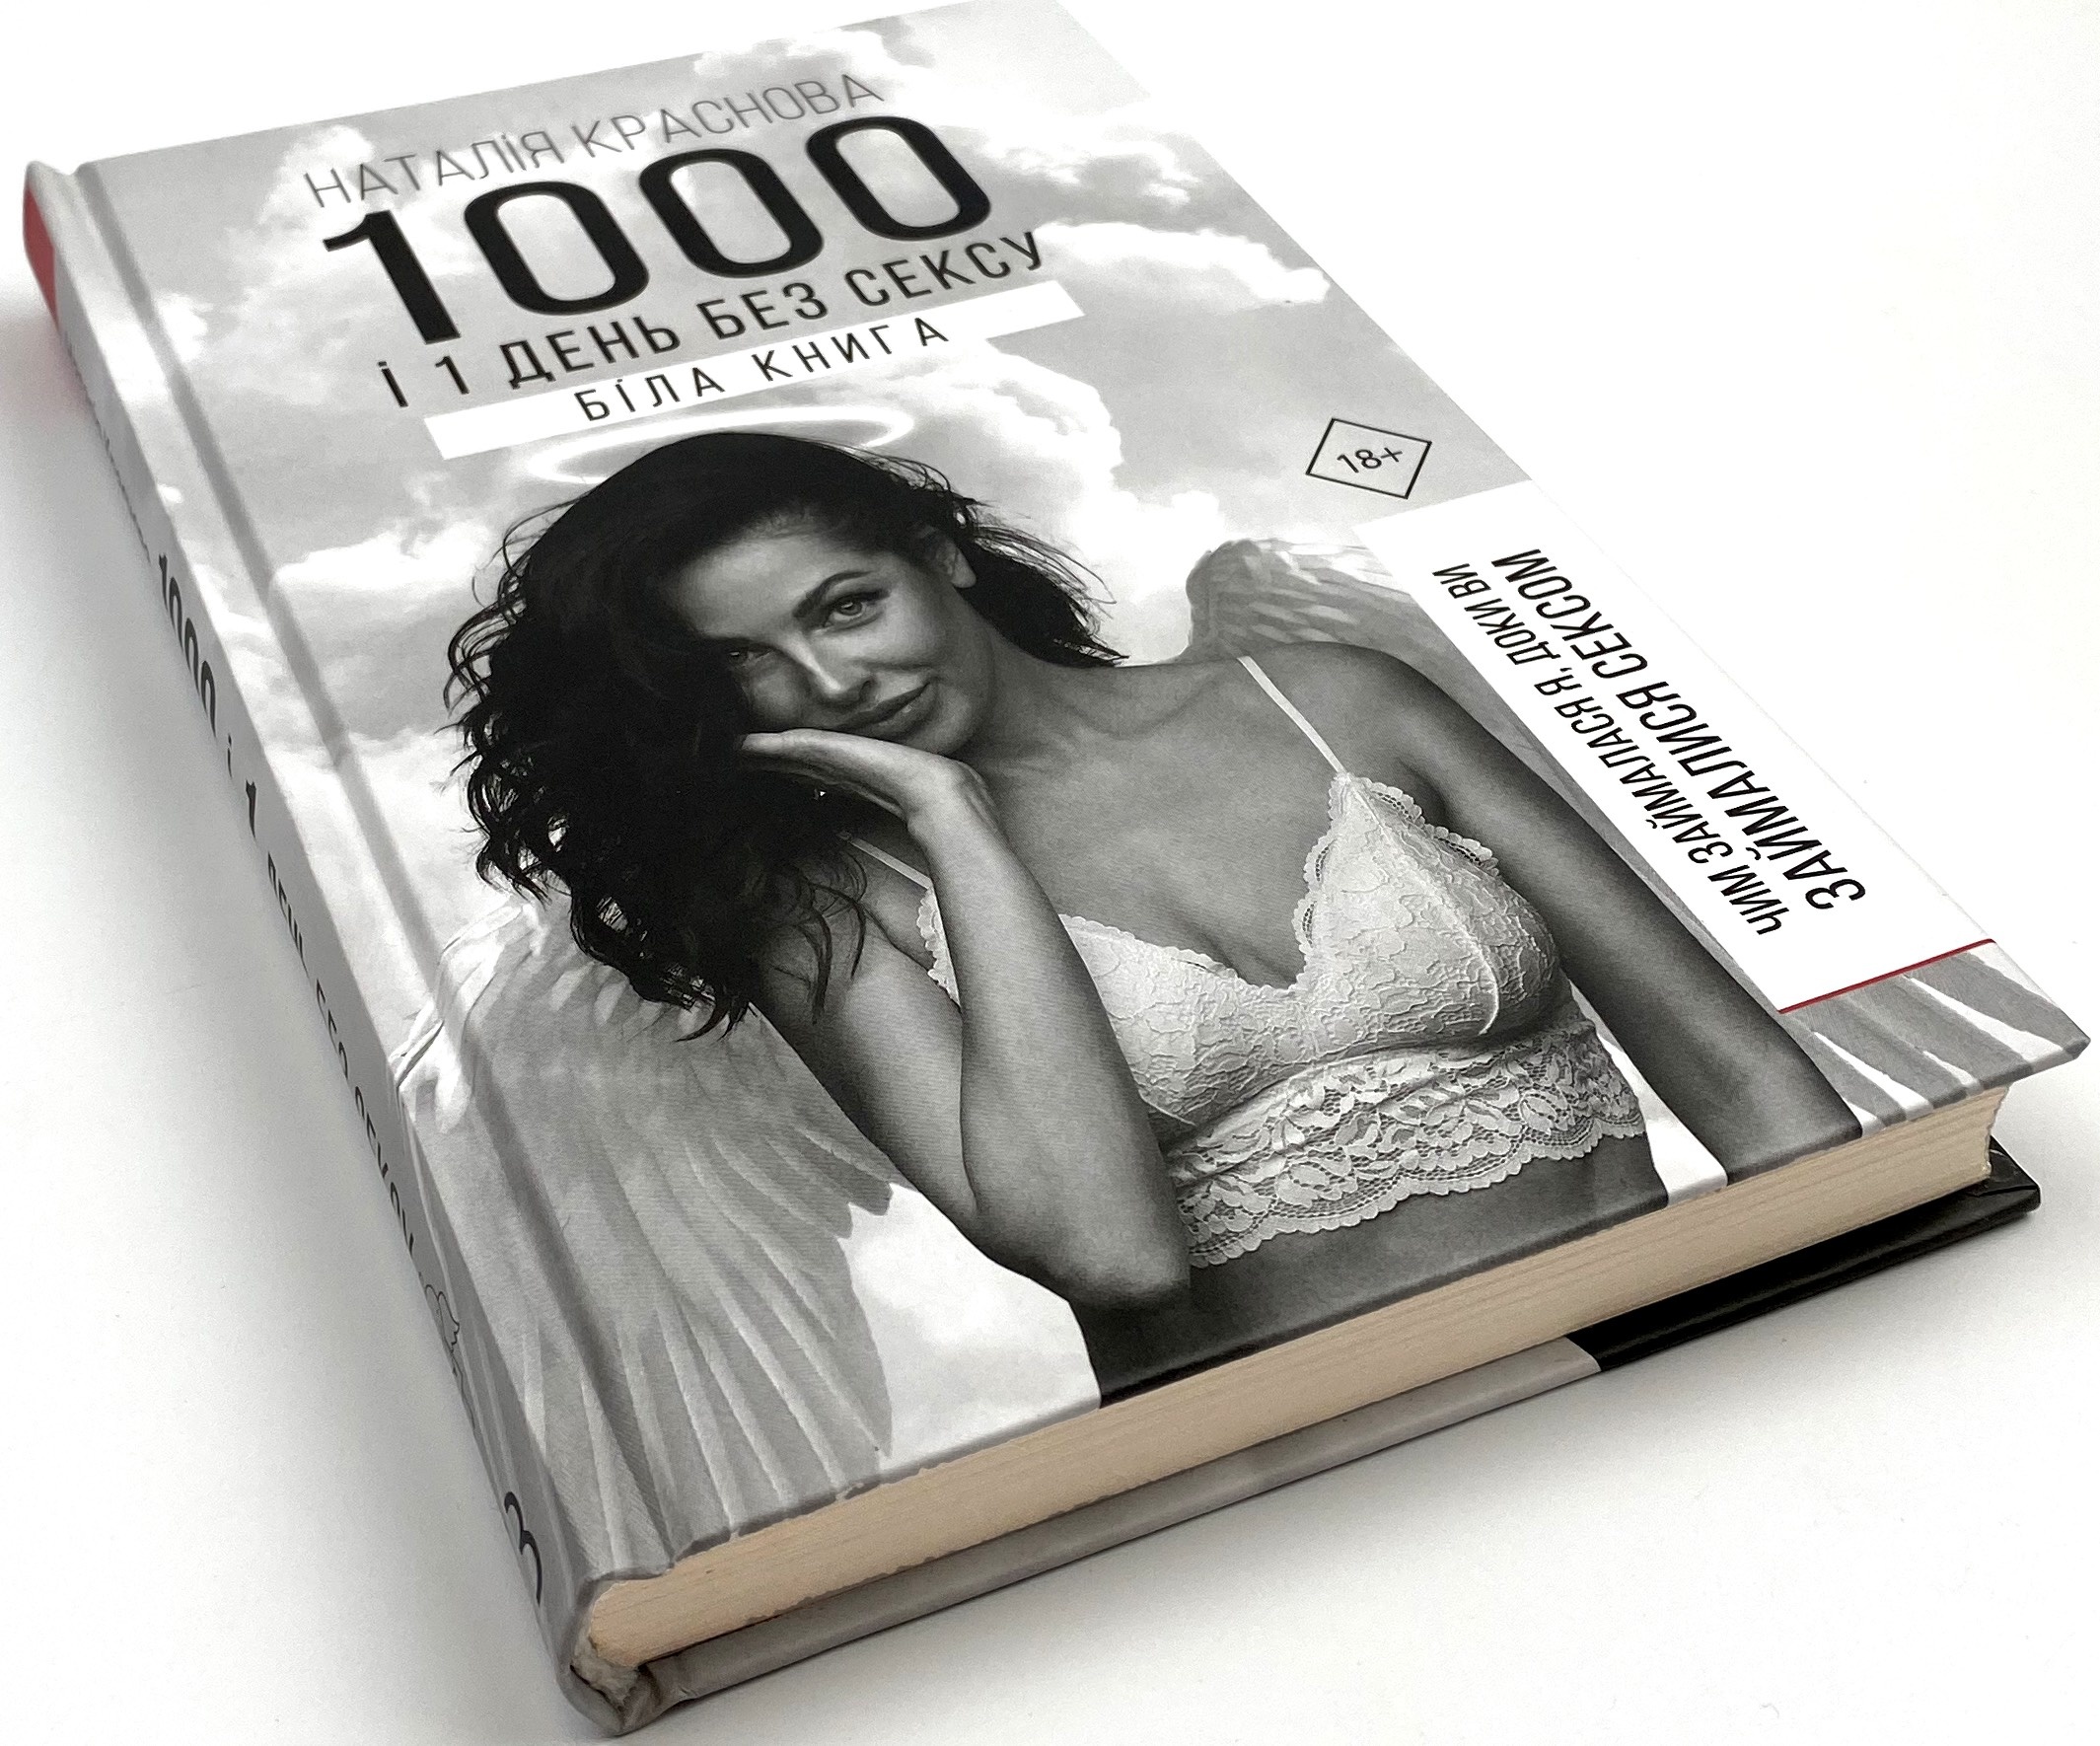 1000 і 1 день без сексу. Біла книга. Автор — Наталія Краснова. 